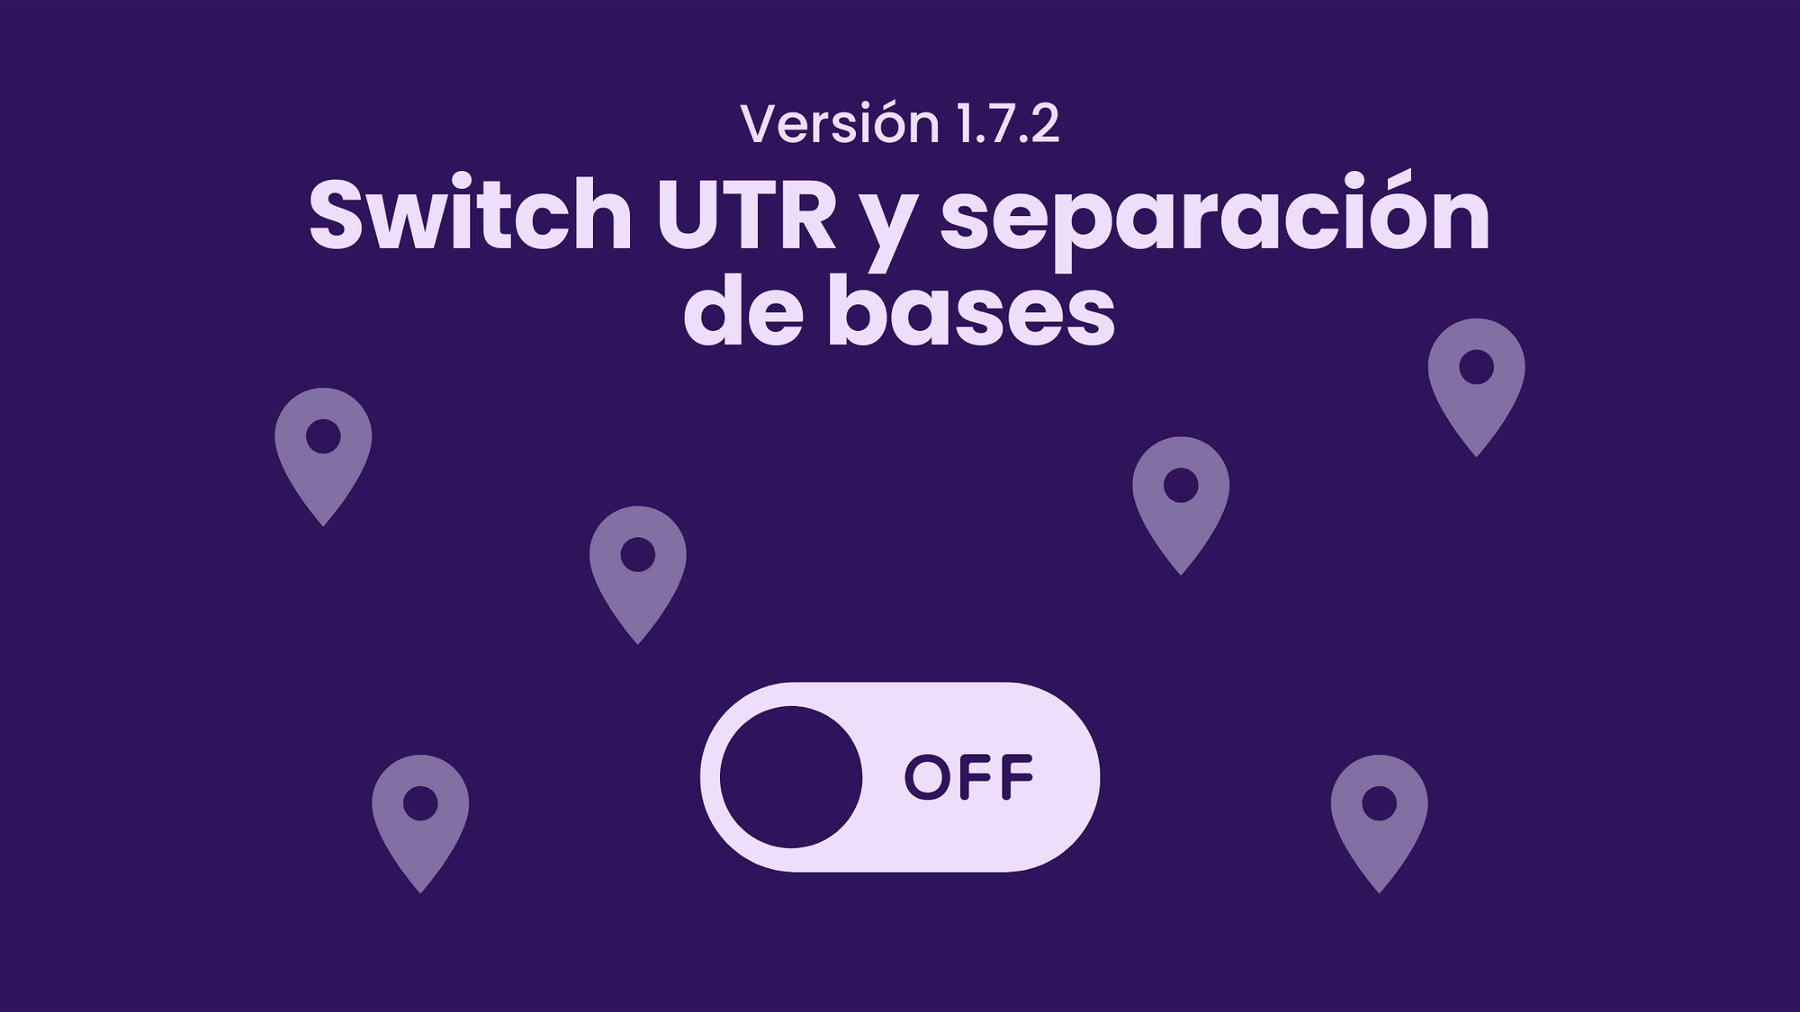 Actualizaci贸n: switch de UTR y separaci贸n de bases